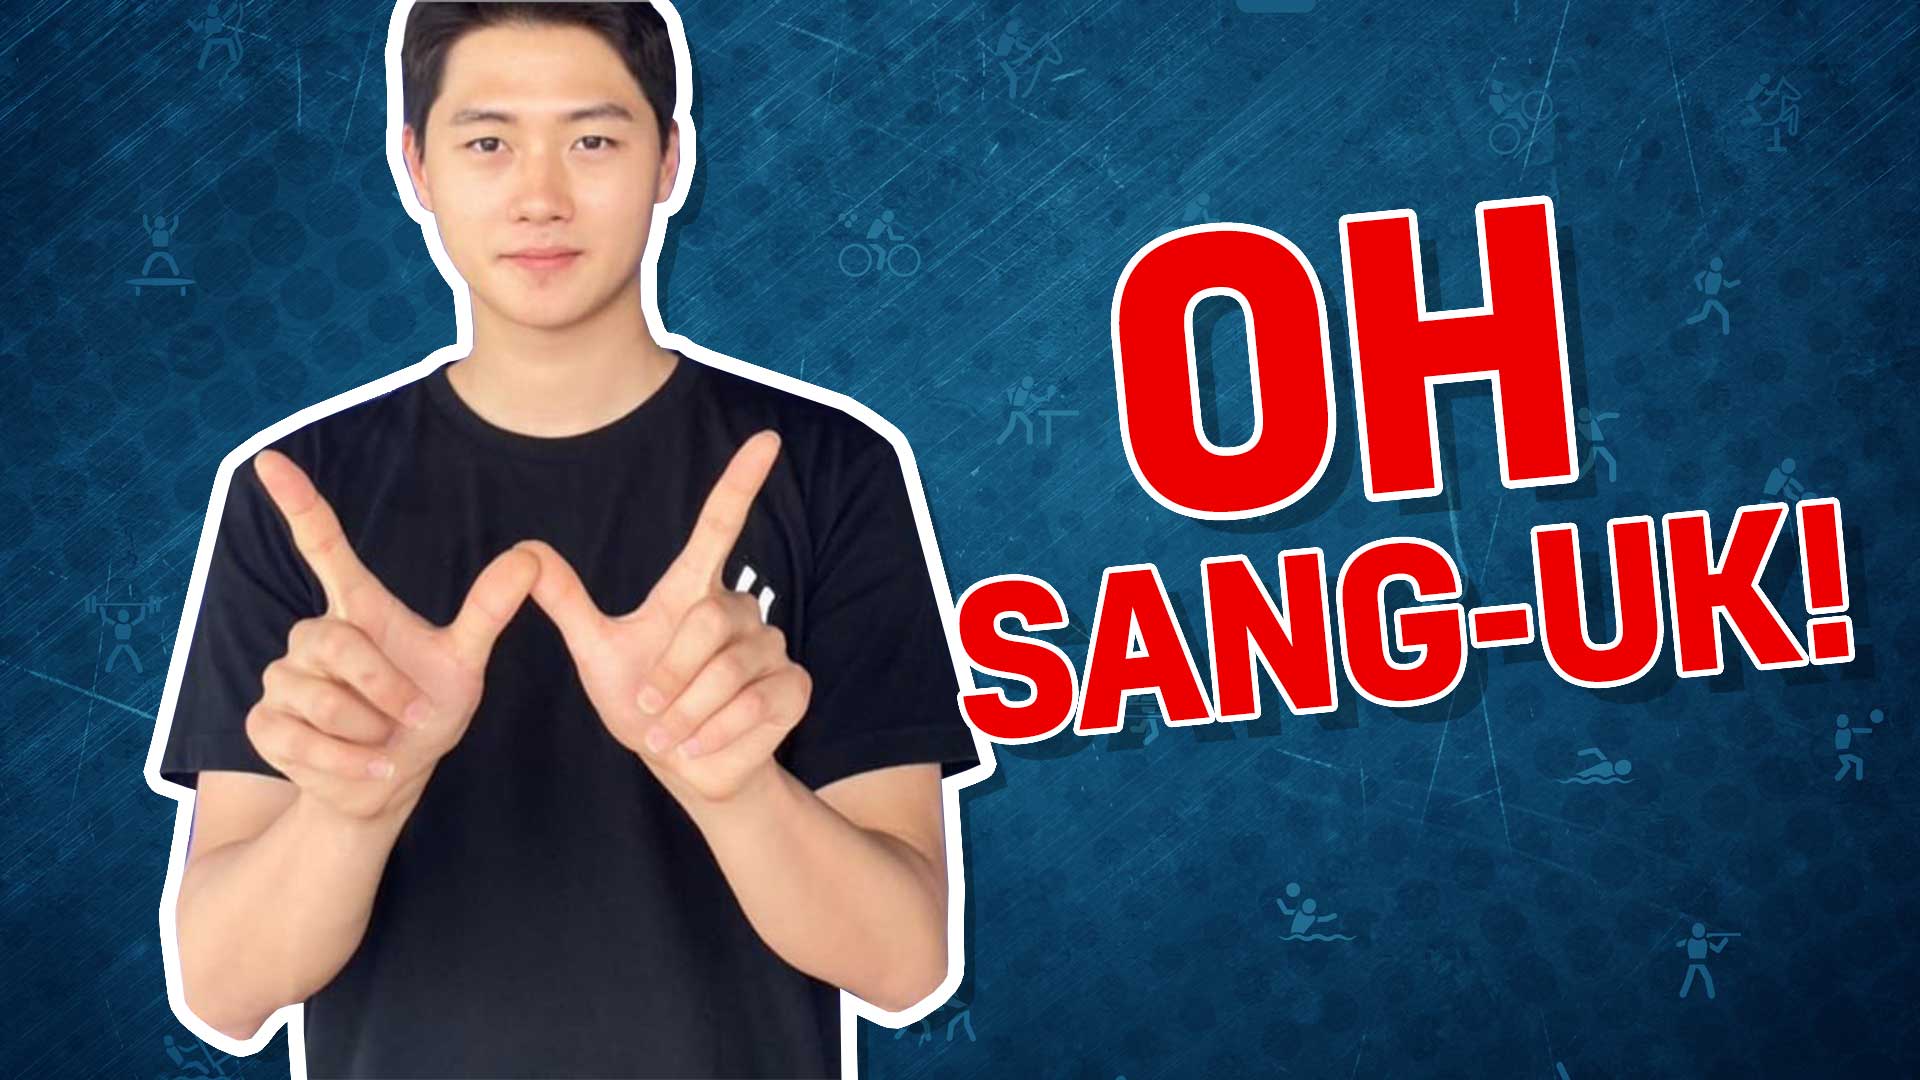 Korean fencer Oh Sang-Uk 